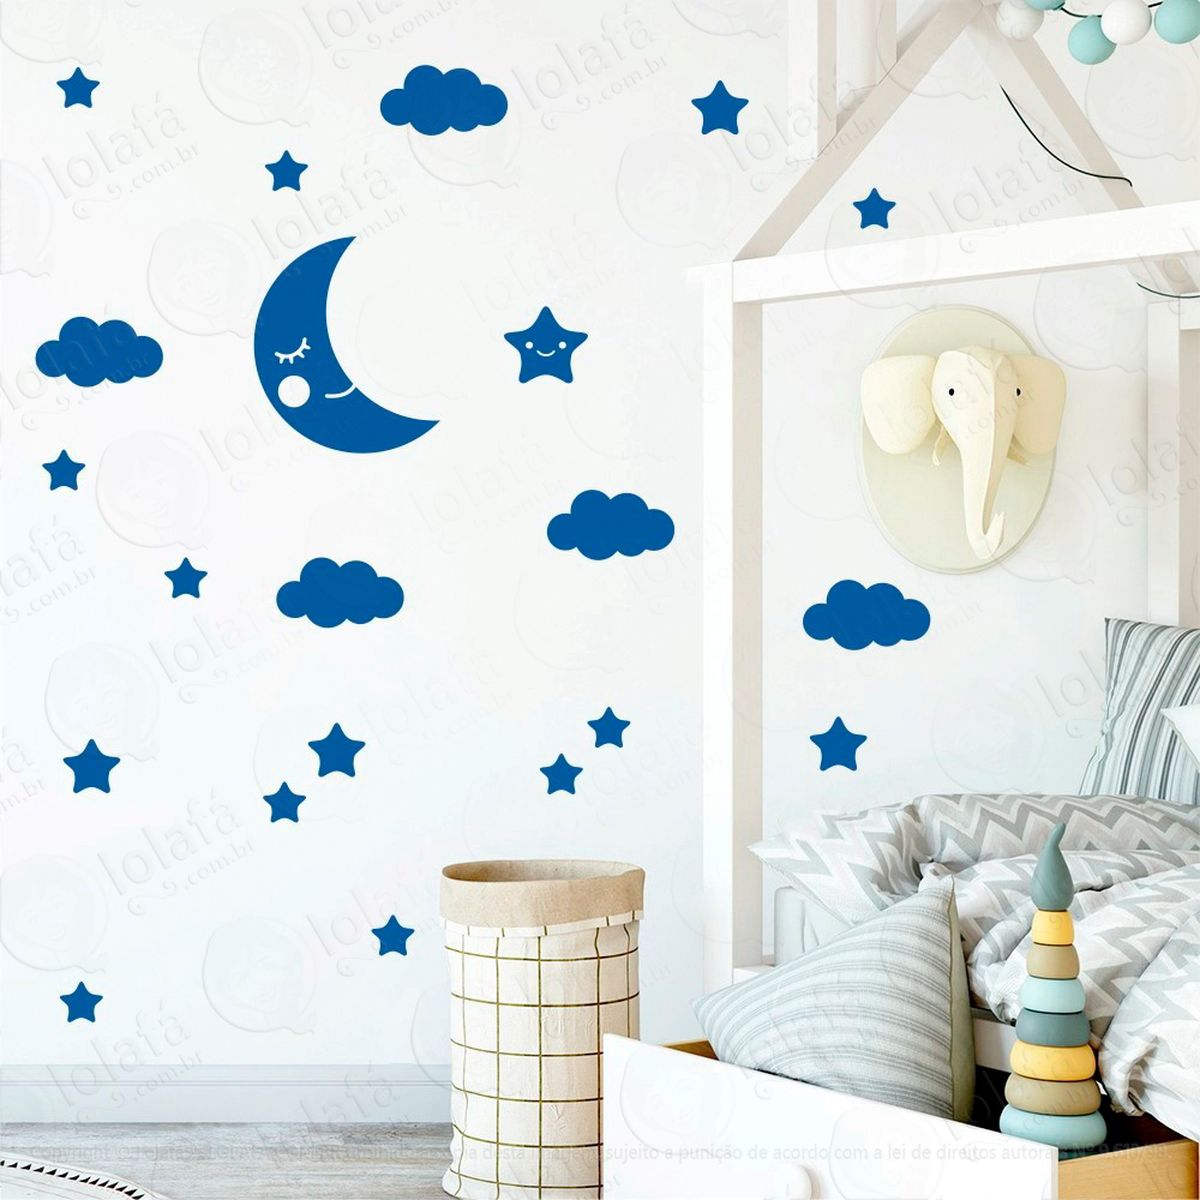 adesivos lua nuvens e estrelas 62 peças adesivos para quarto de bebê infantil - mod:617